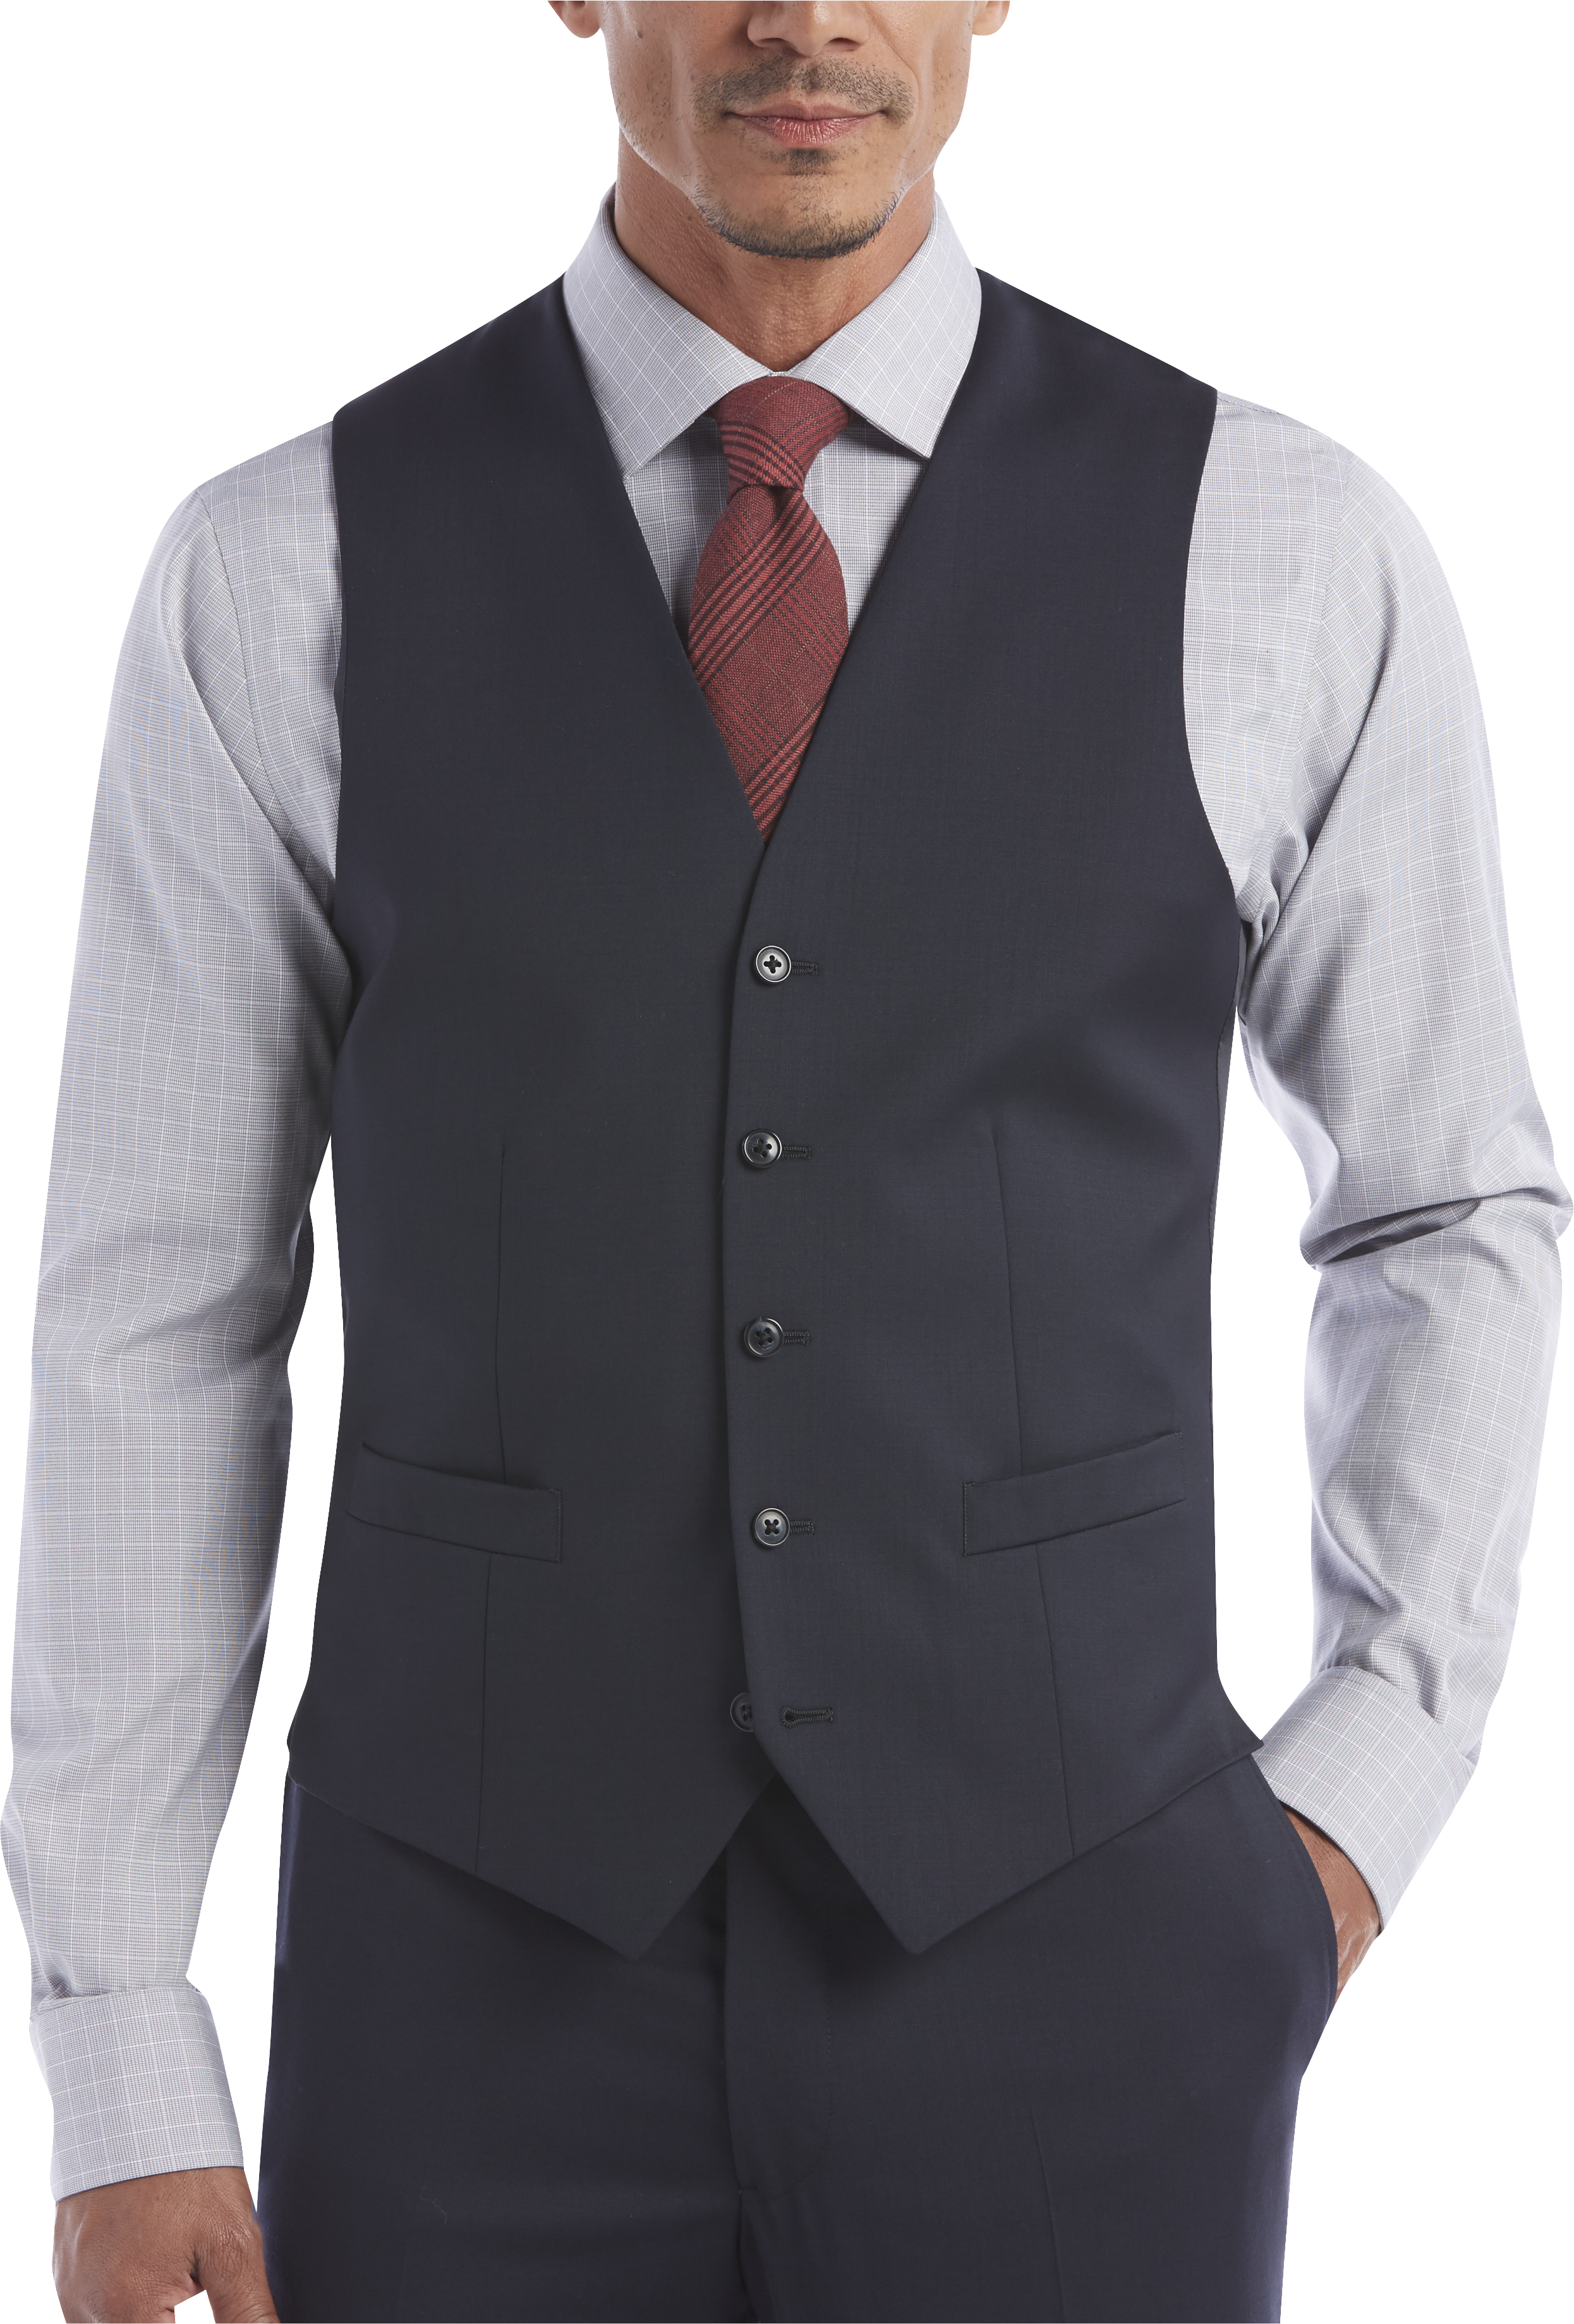 Joseph Abboud Navy Modern Fit Suit Separates Vest - Men's Suits | Men's ...